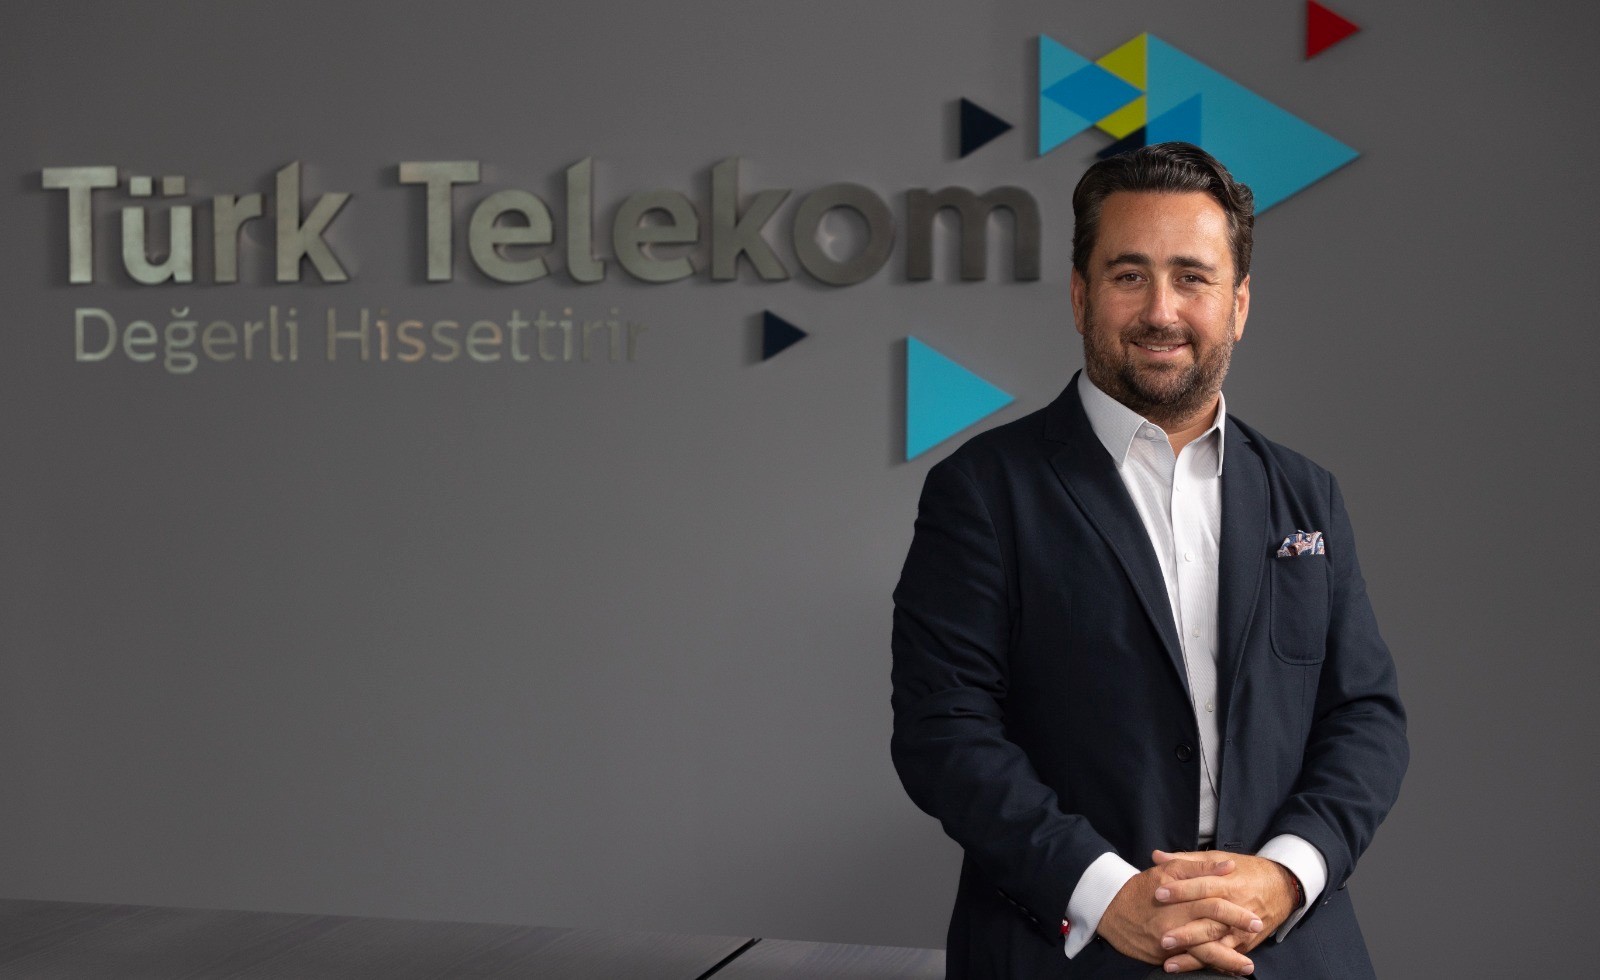 Türk Telekom’un engelleri kaldıran projelerine CSR Excellence Awards’tan iki ödül